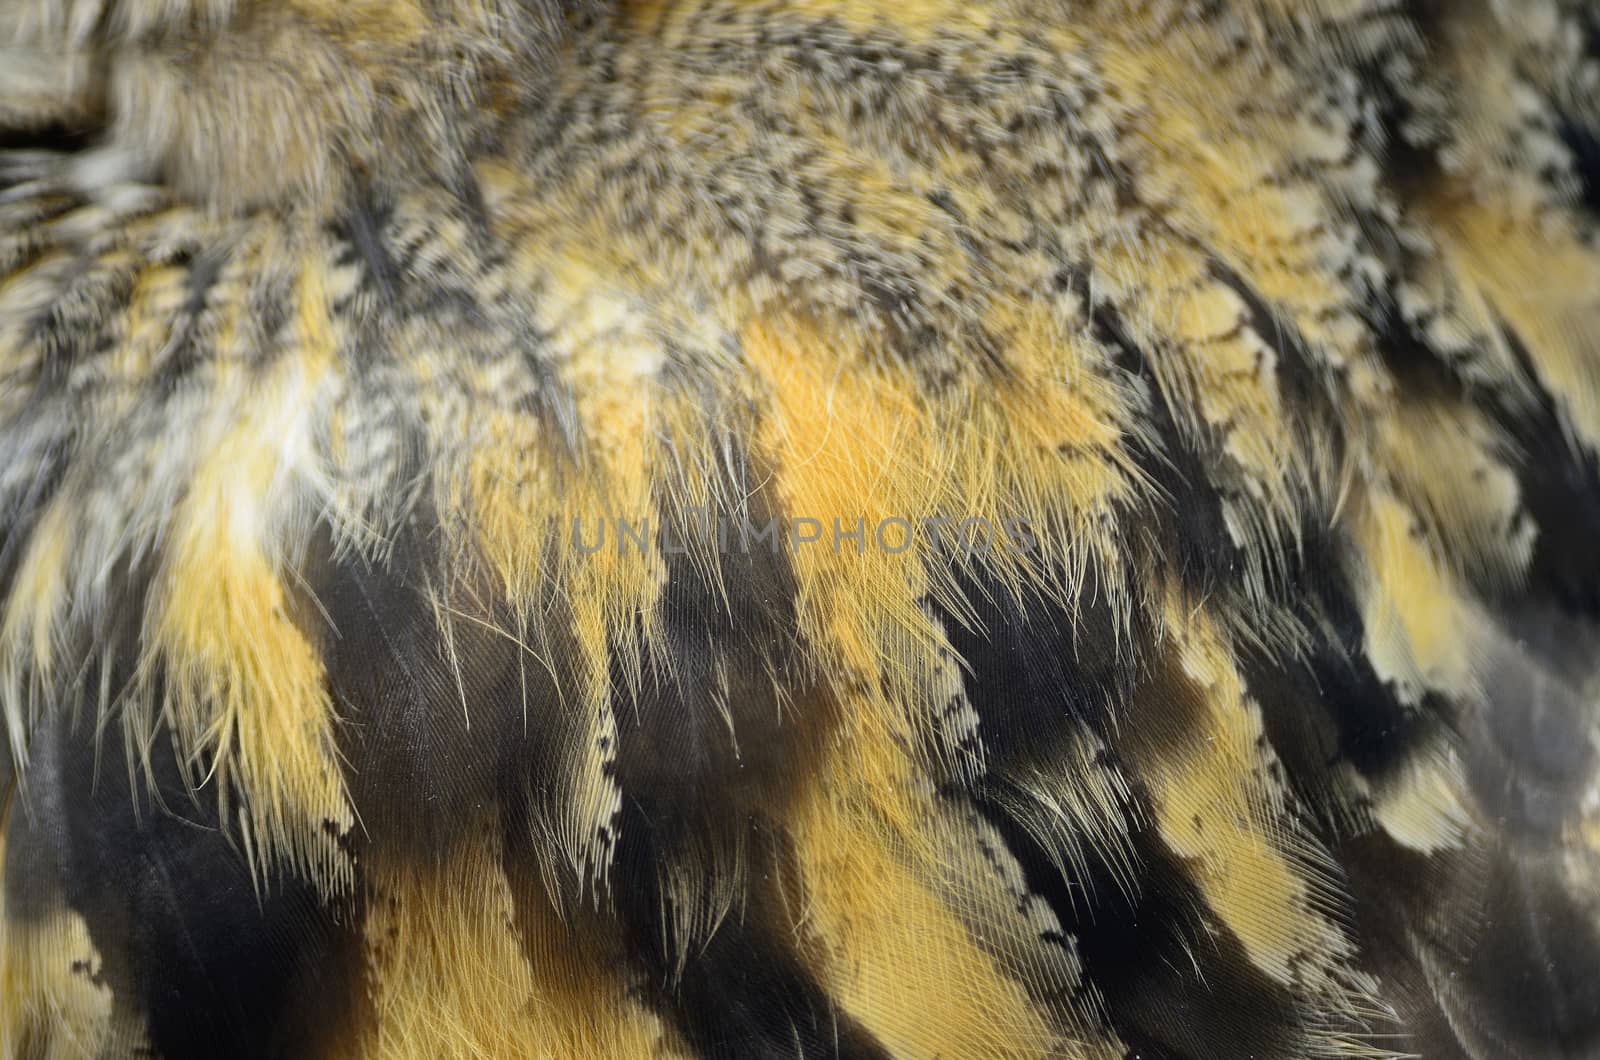 Eurasian Eagle Owl feathers by panuruangjan